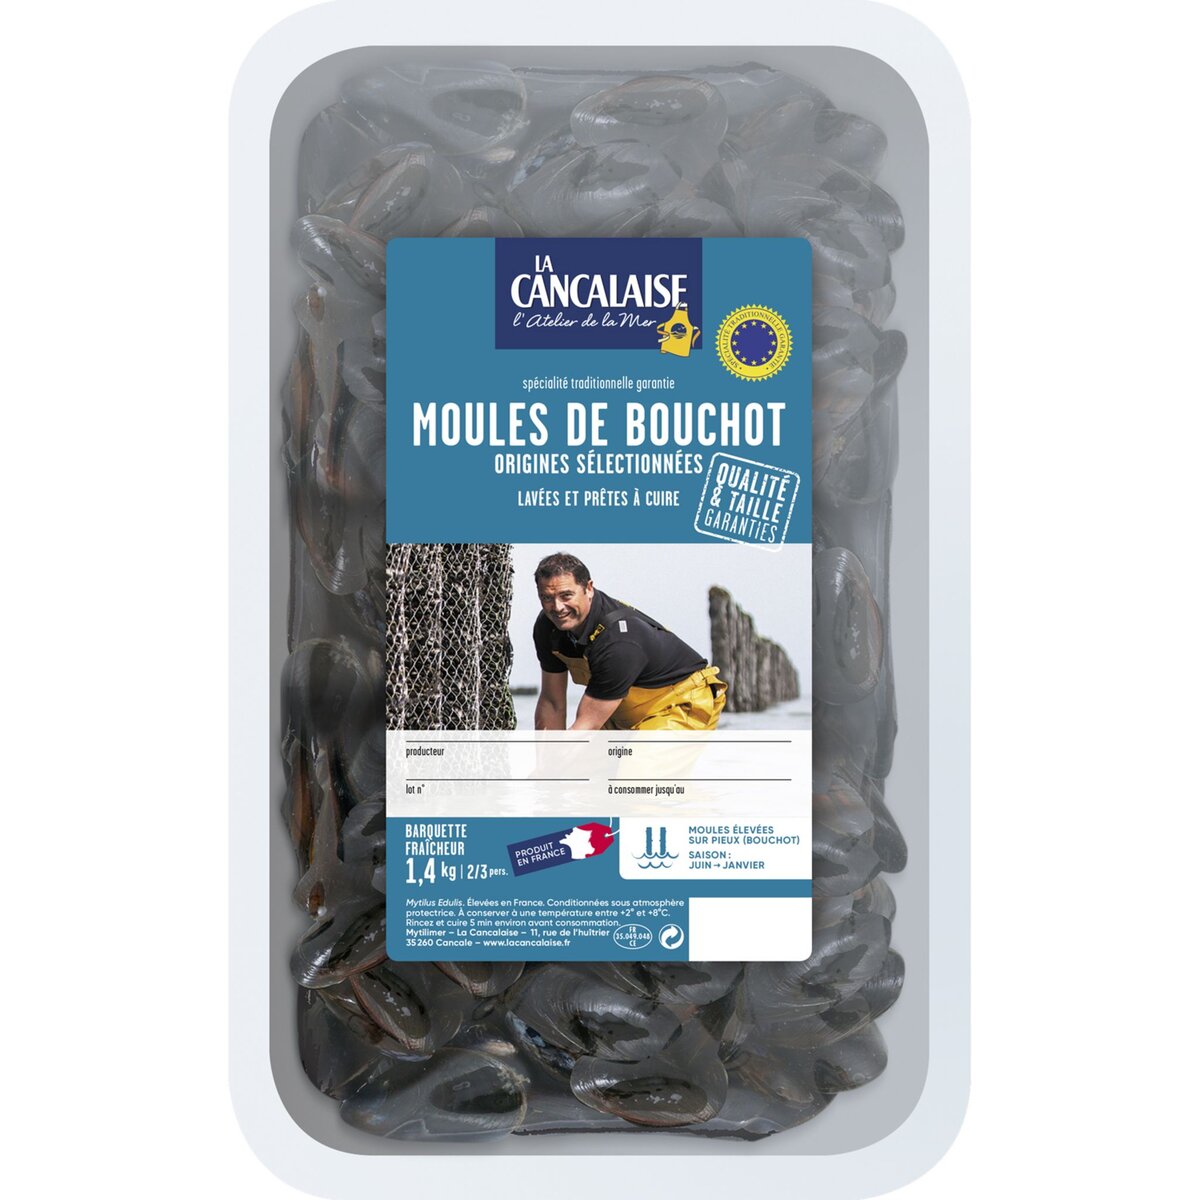 Moules de Bouchot élevées en France 2l 2 personnes 1.4kg